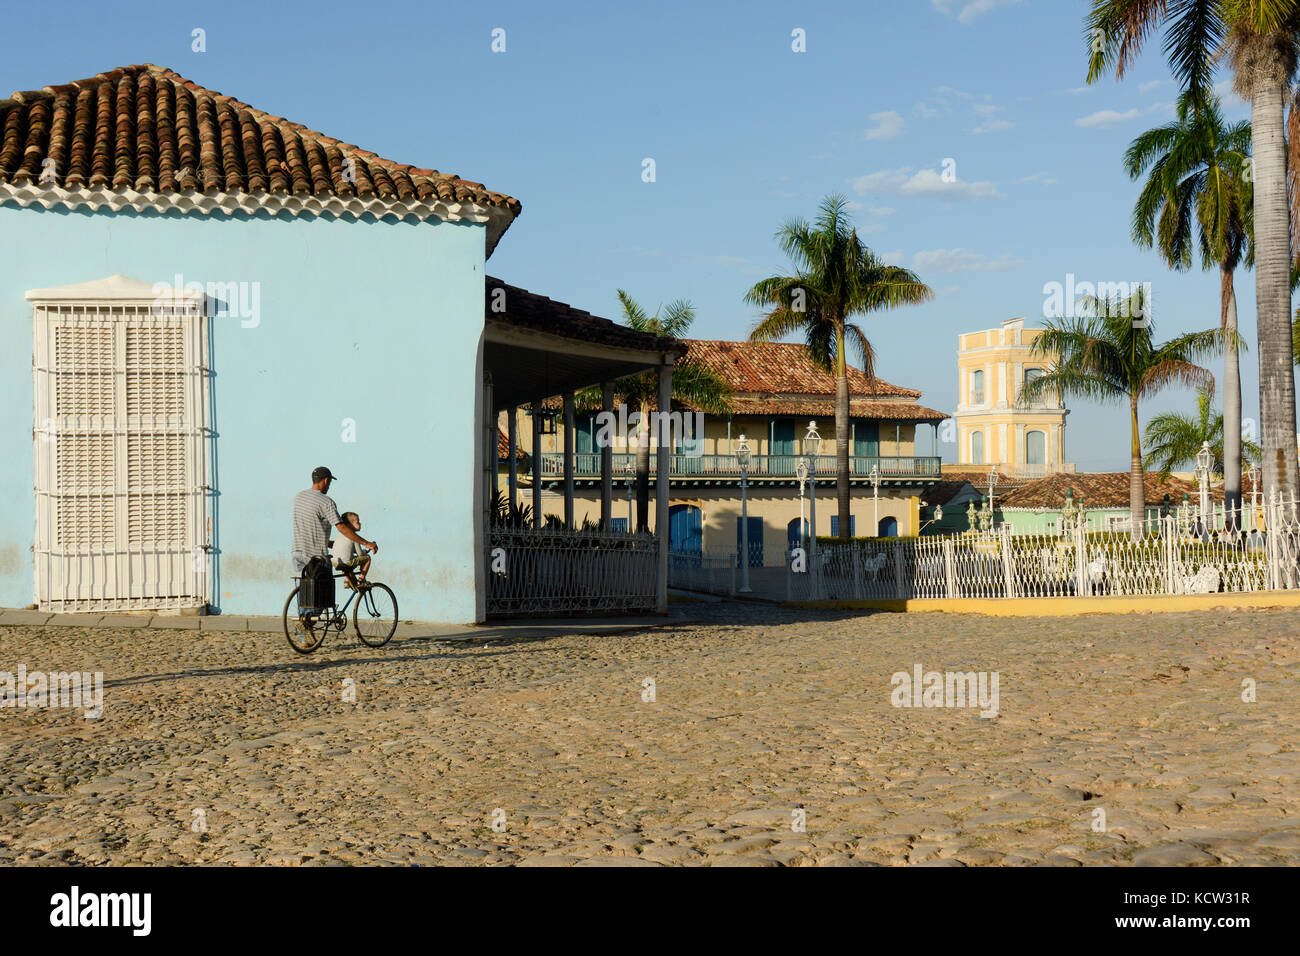 L'uomo spinge il ragazzo sulla bicicletta, Plaza de Mayor, Trinidad, Cuba Foto Stock